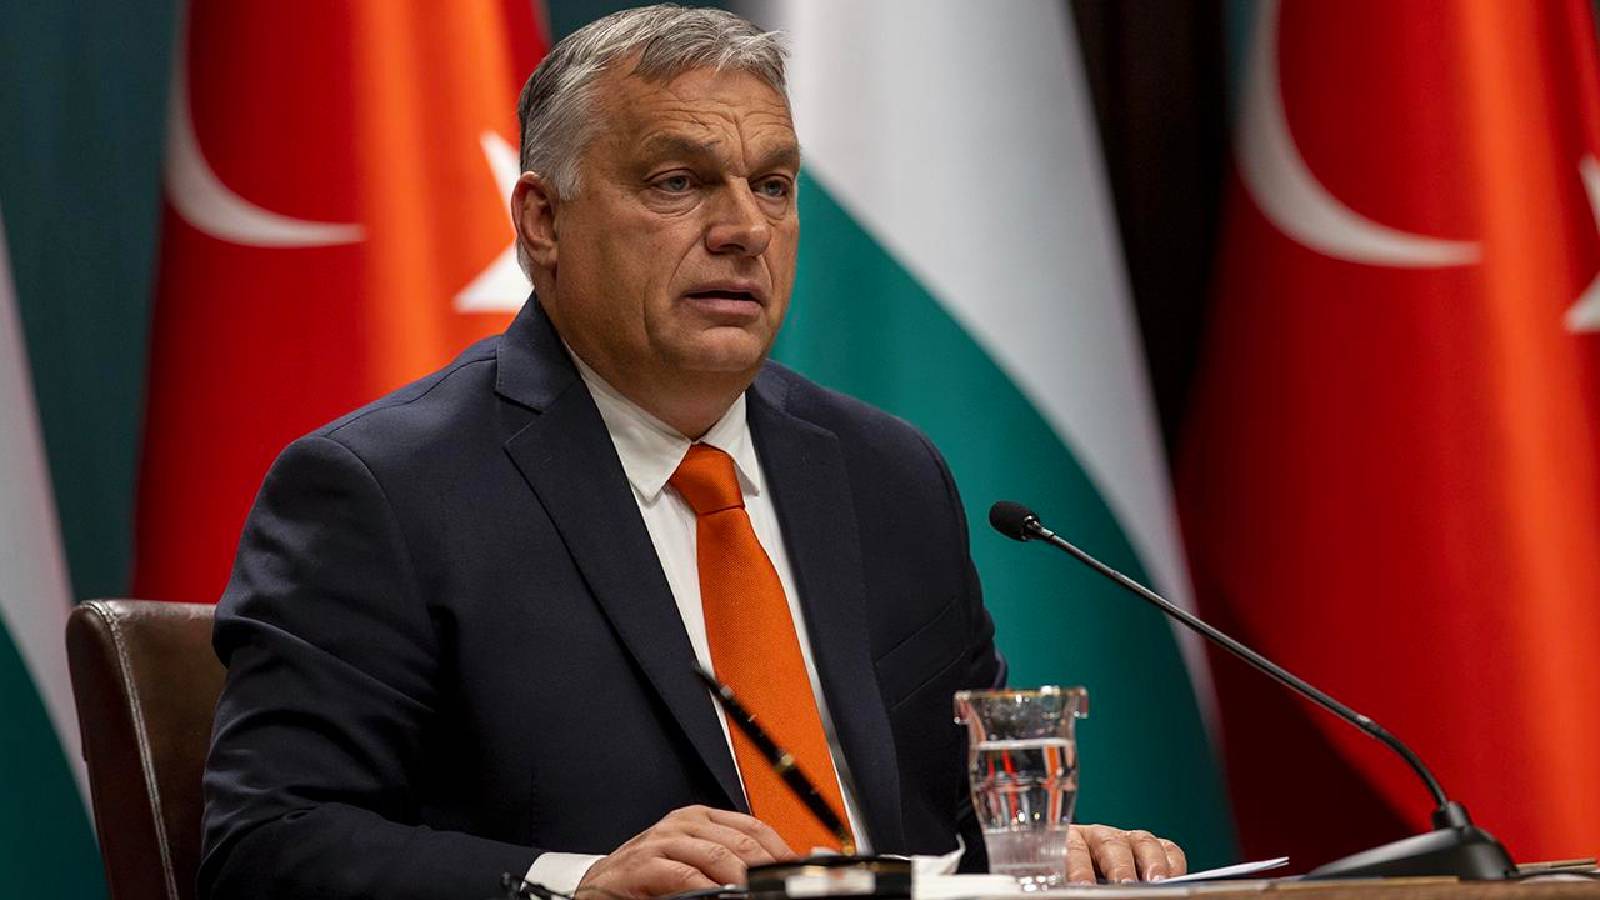 Macaristan Başbakanı Orban, NATO Genel Sekreteri’yle görüştü: “İsveç’in üyeliğini destekleyeceğiz”